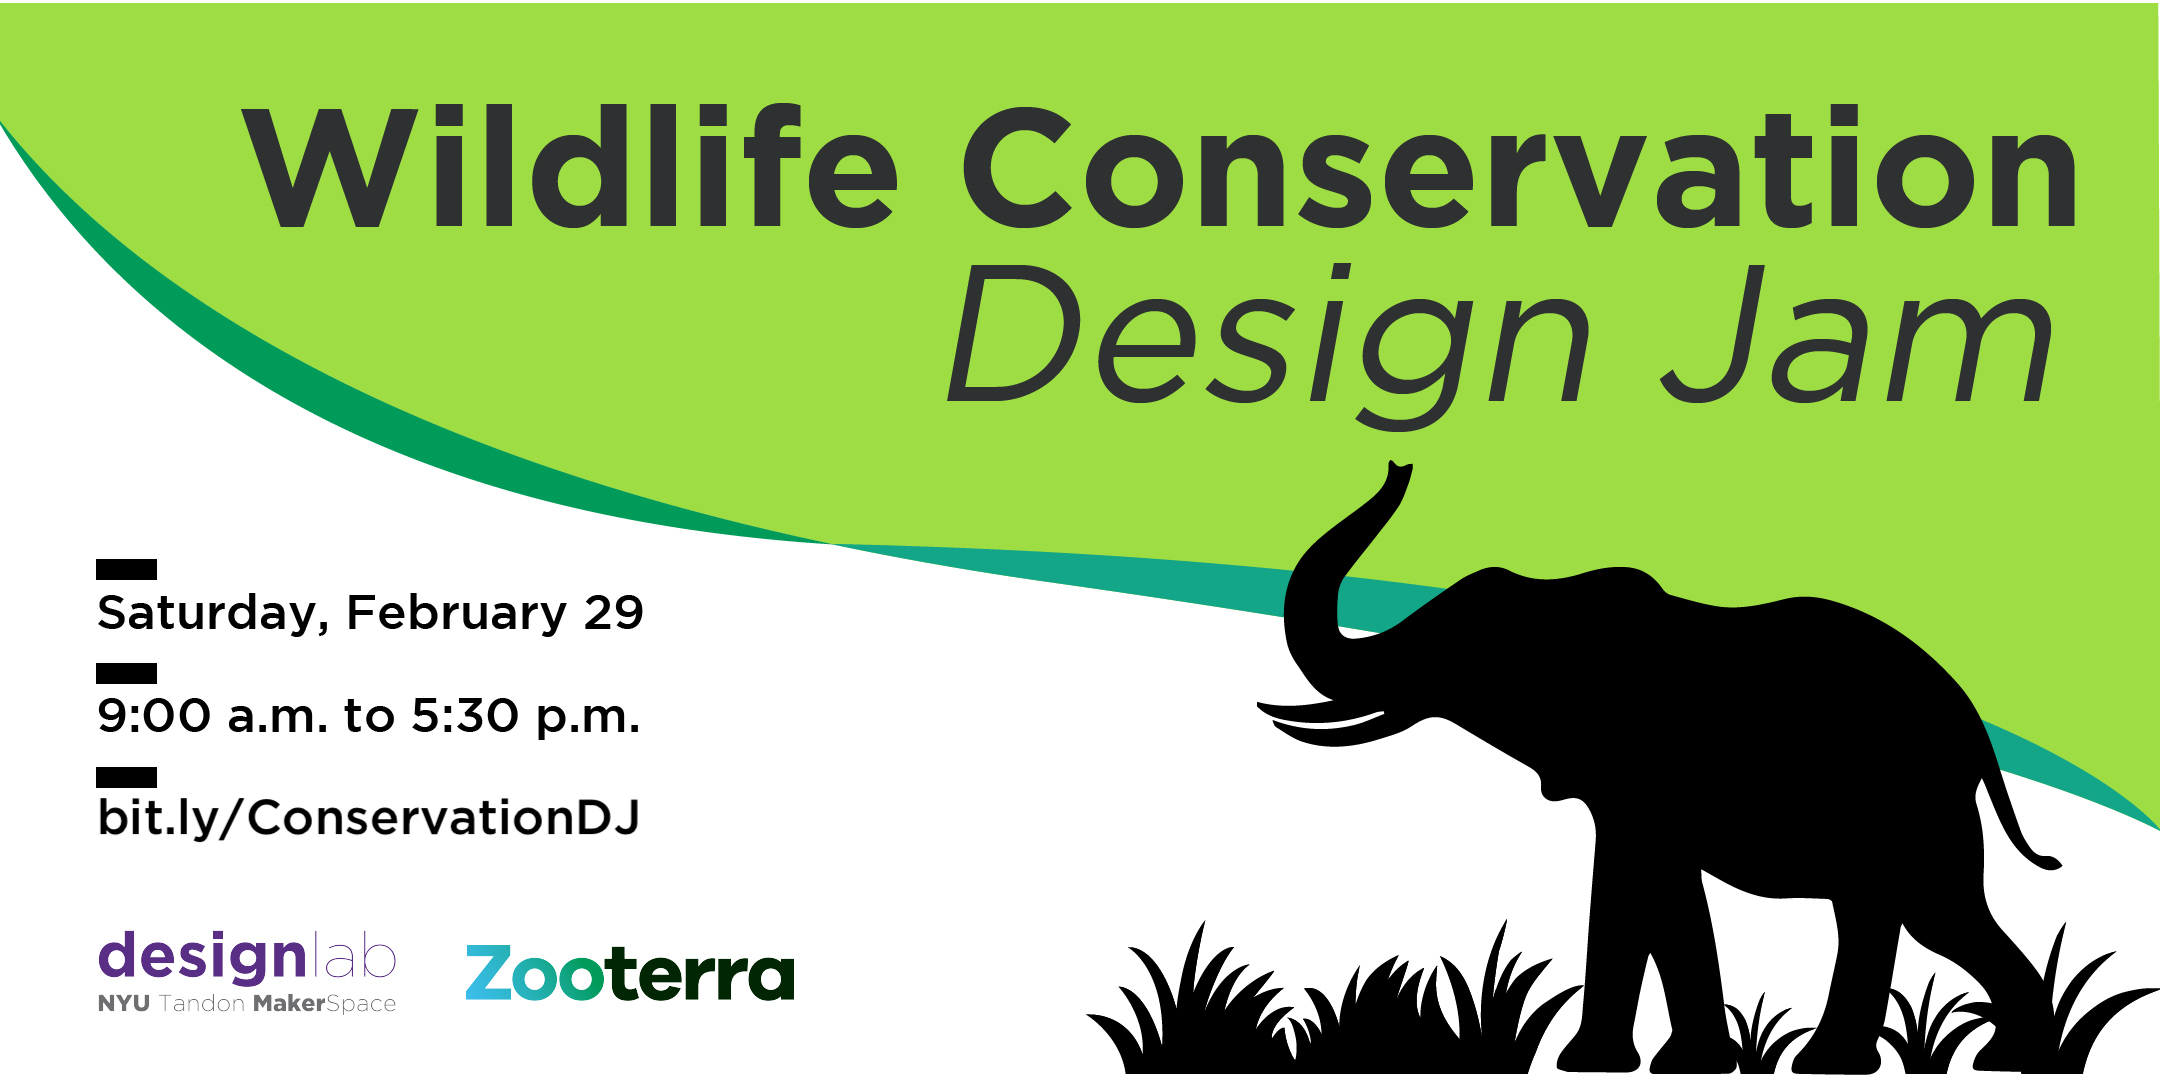 Wildlife Conservation Design Jam